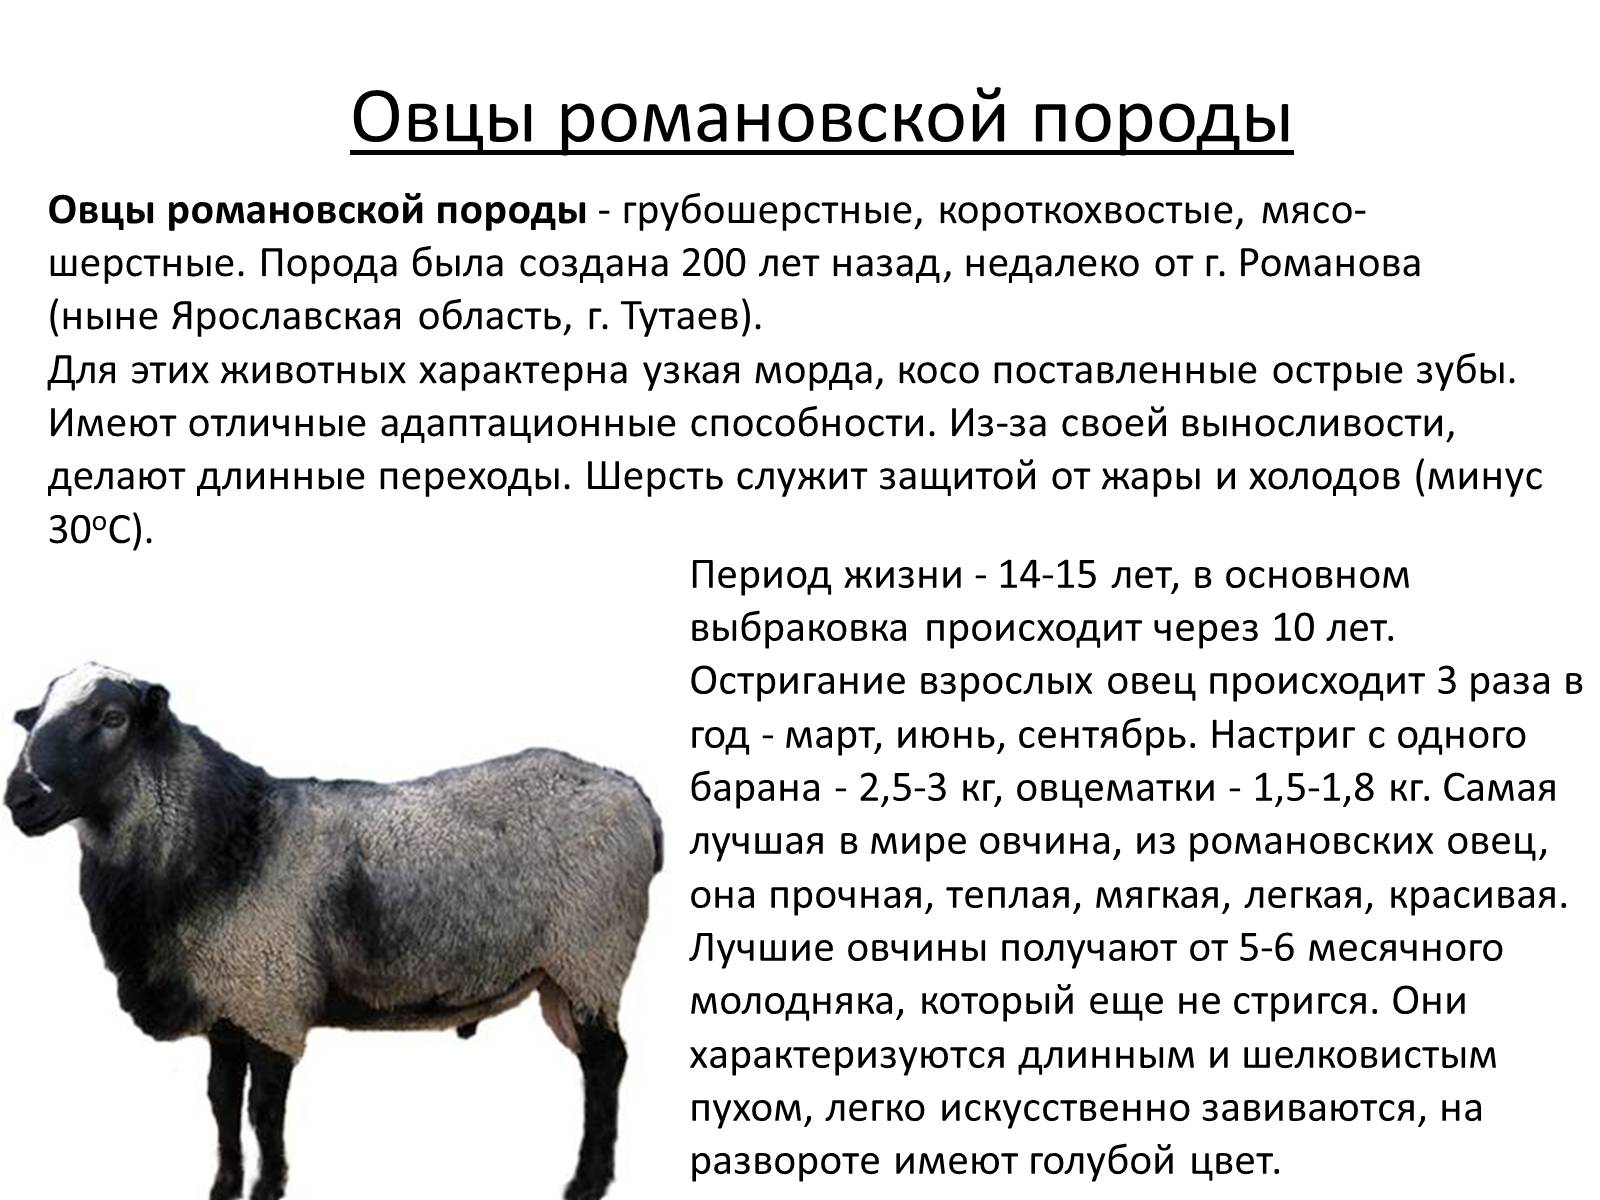 Овцы романовские характеристика. Грубошерстные породы овец Романовская. Романовская порода овец вес. Романовская порода овец скрещивание. Романовская порода овец 3d.